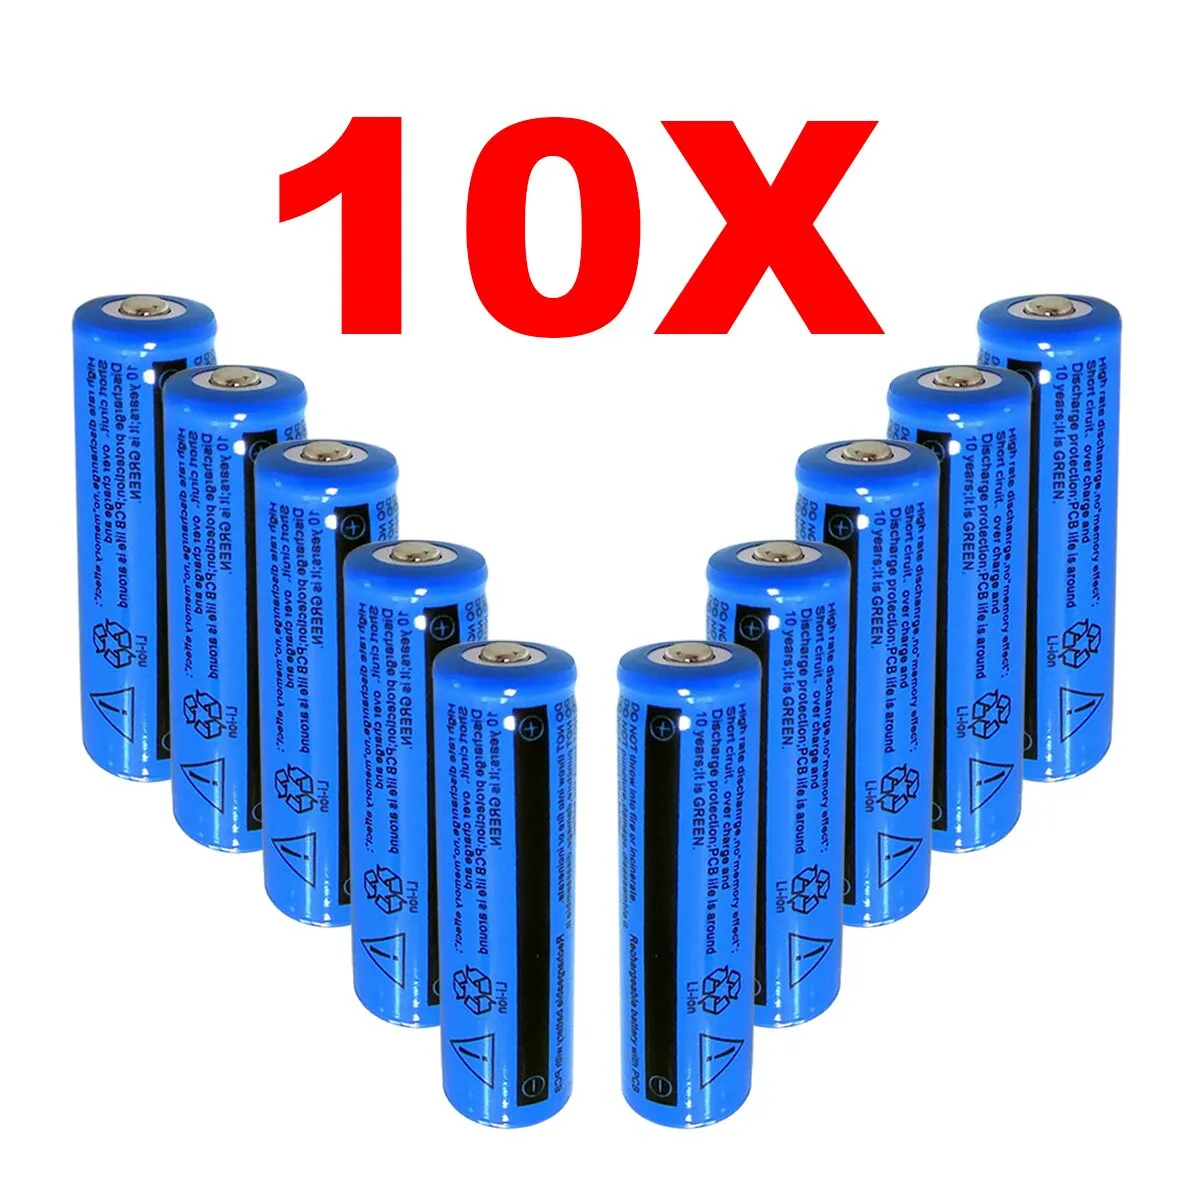 10 pacotes de baterias recarregáveis de íon-lítio, 3000mah, bateria 18650, 3.7v, 11.1w, bateria brc, não é aaa ou aa para lanterna, tocha laser